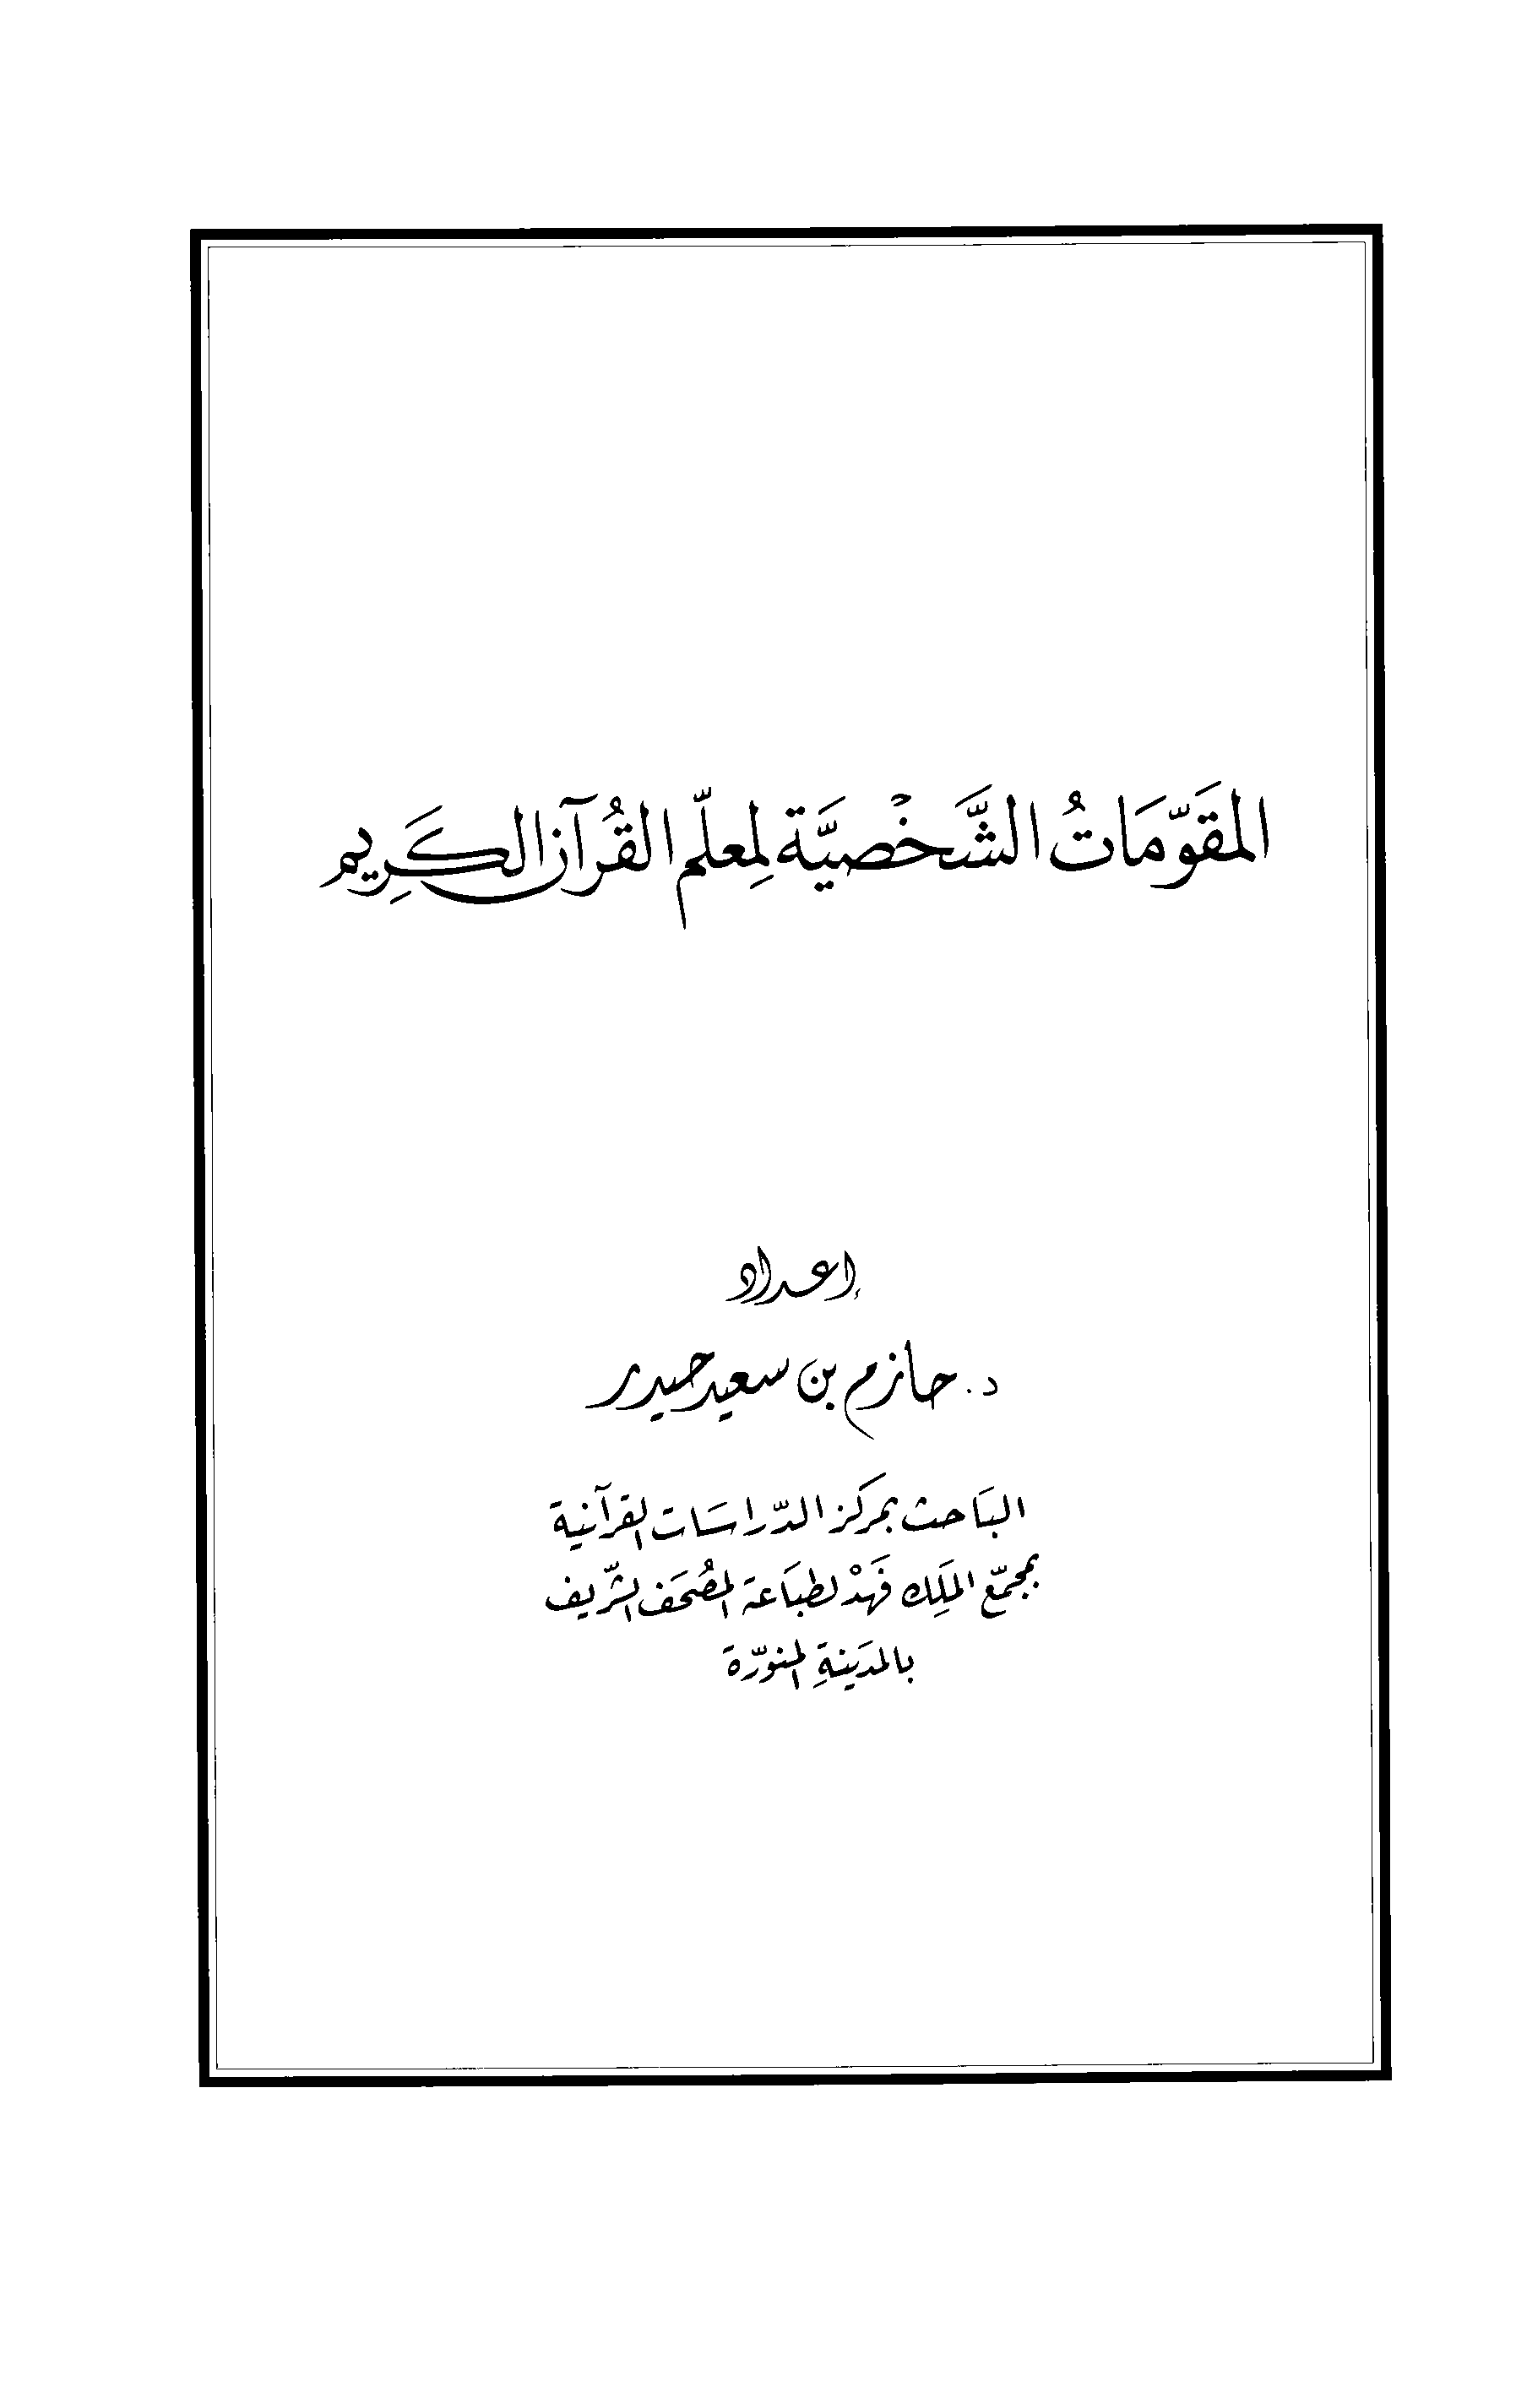 تحميل كتاب المقومات الشخصية لمعلم القرآن الكريم للمؤلف: الدكتور حازم بن سعيد حيدر سعديد الكرمي